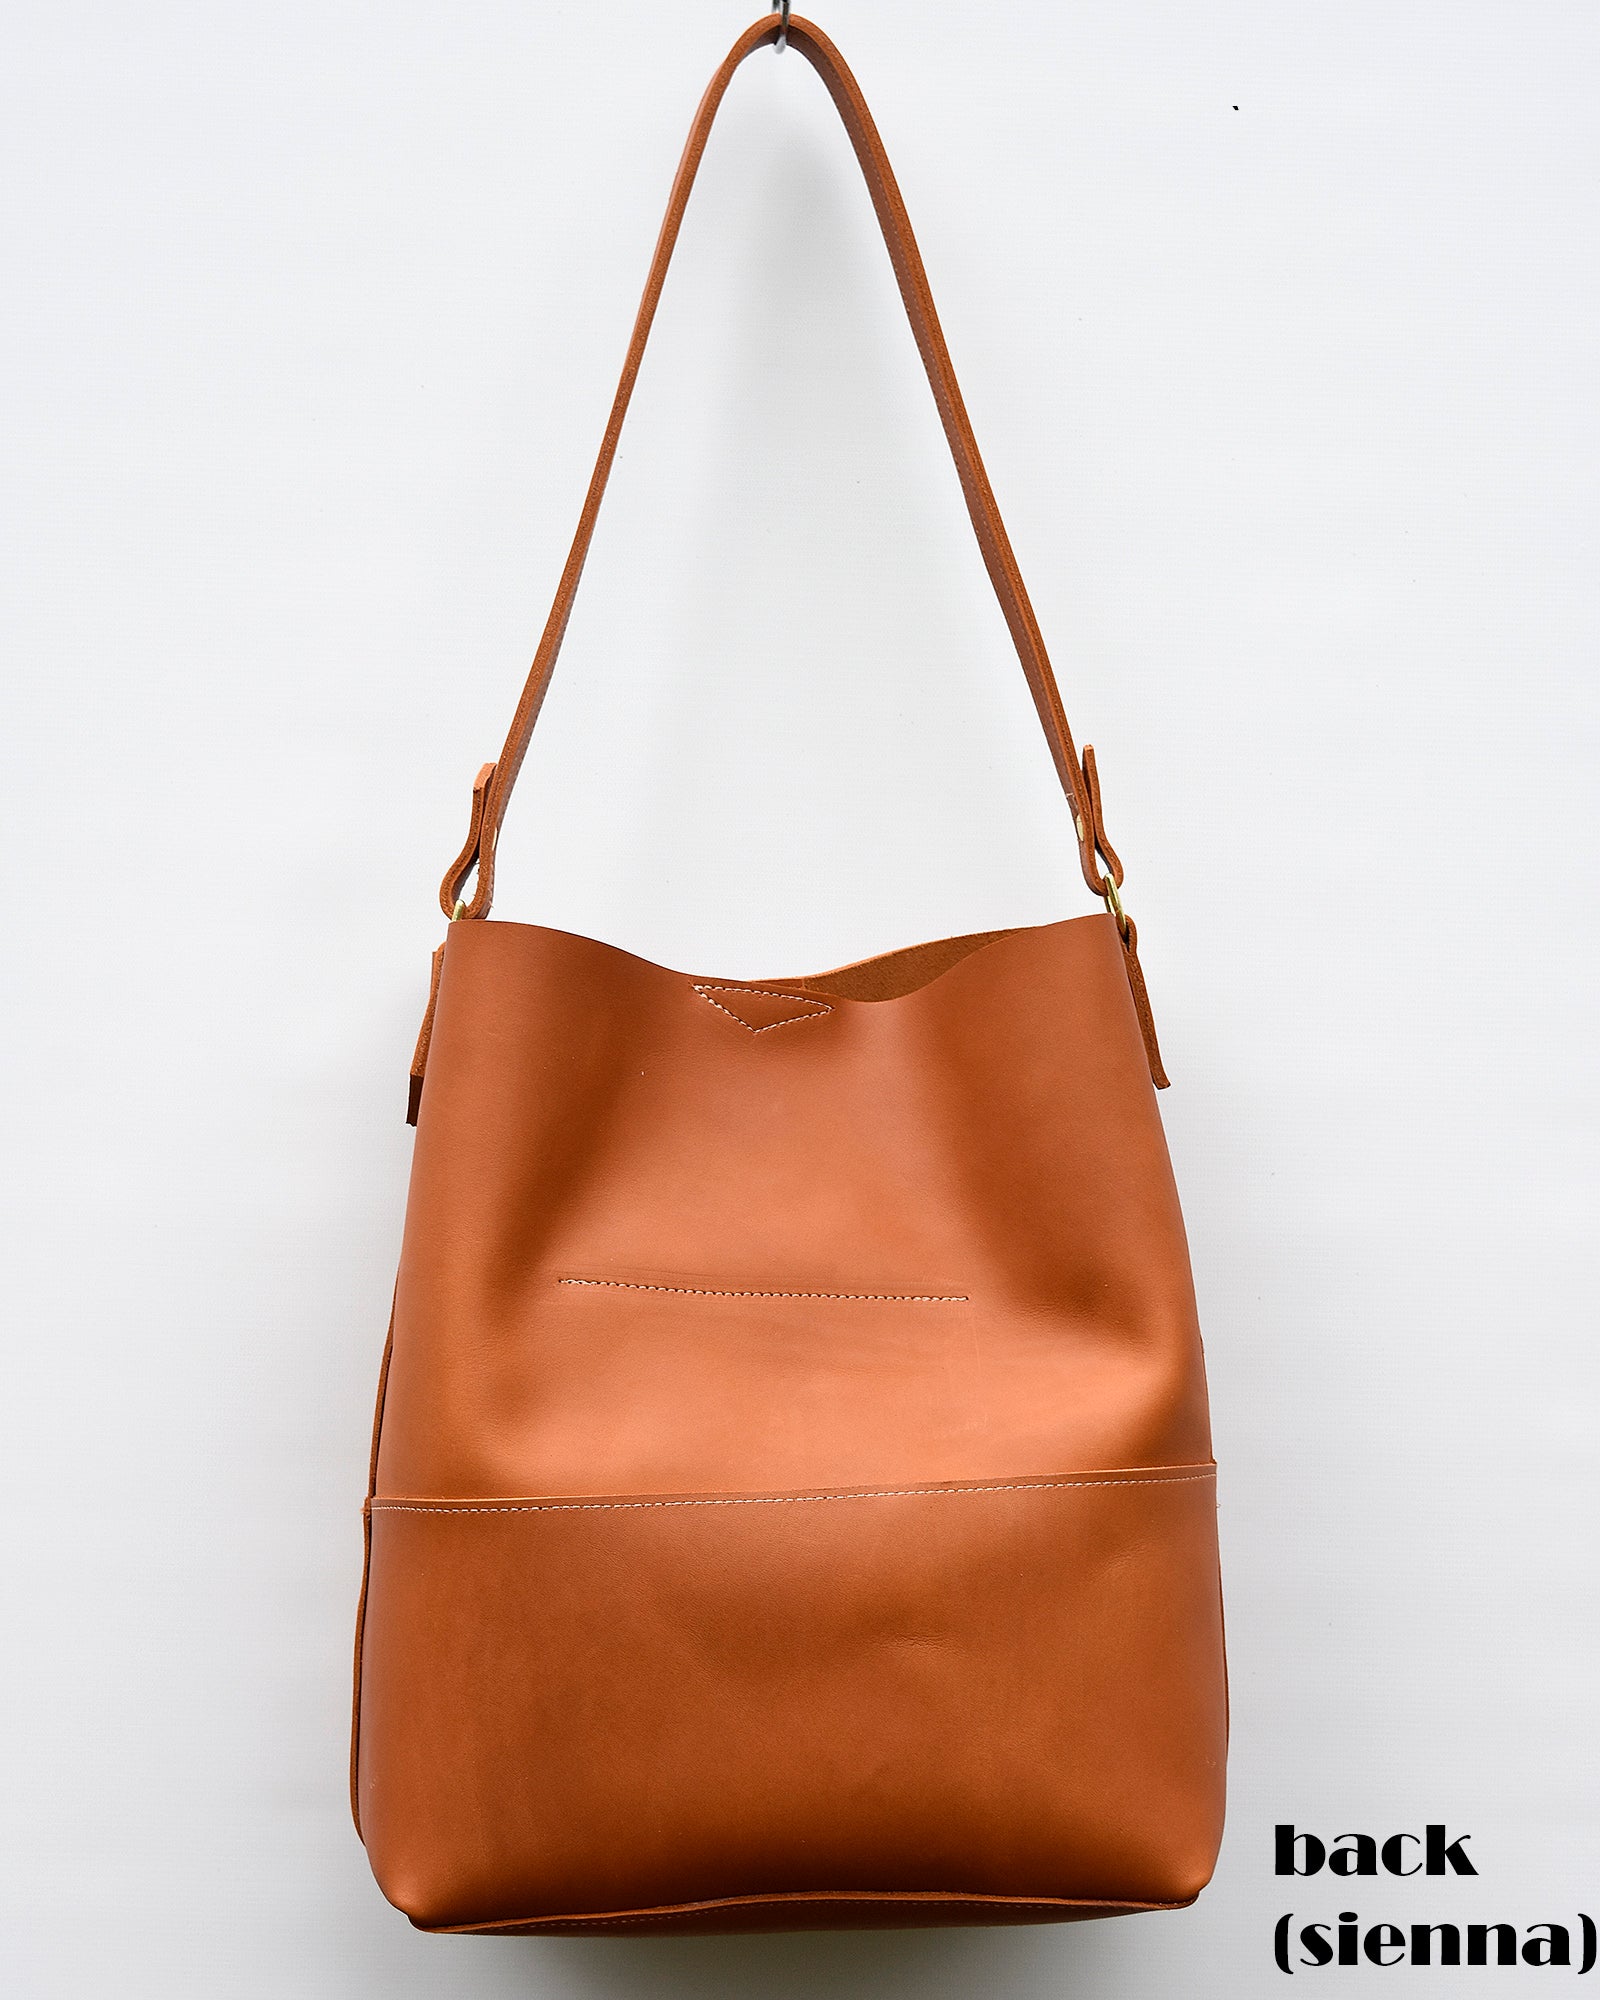 Boho leather bag turquoise fringe purse large size | Etsy | Boho leather  bags, Boho leather, Boho style handbags